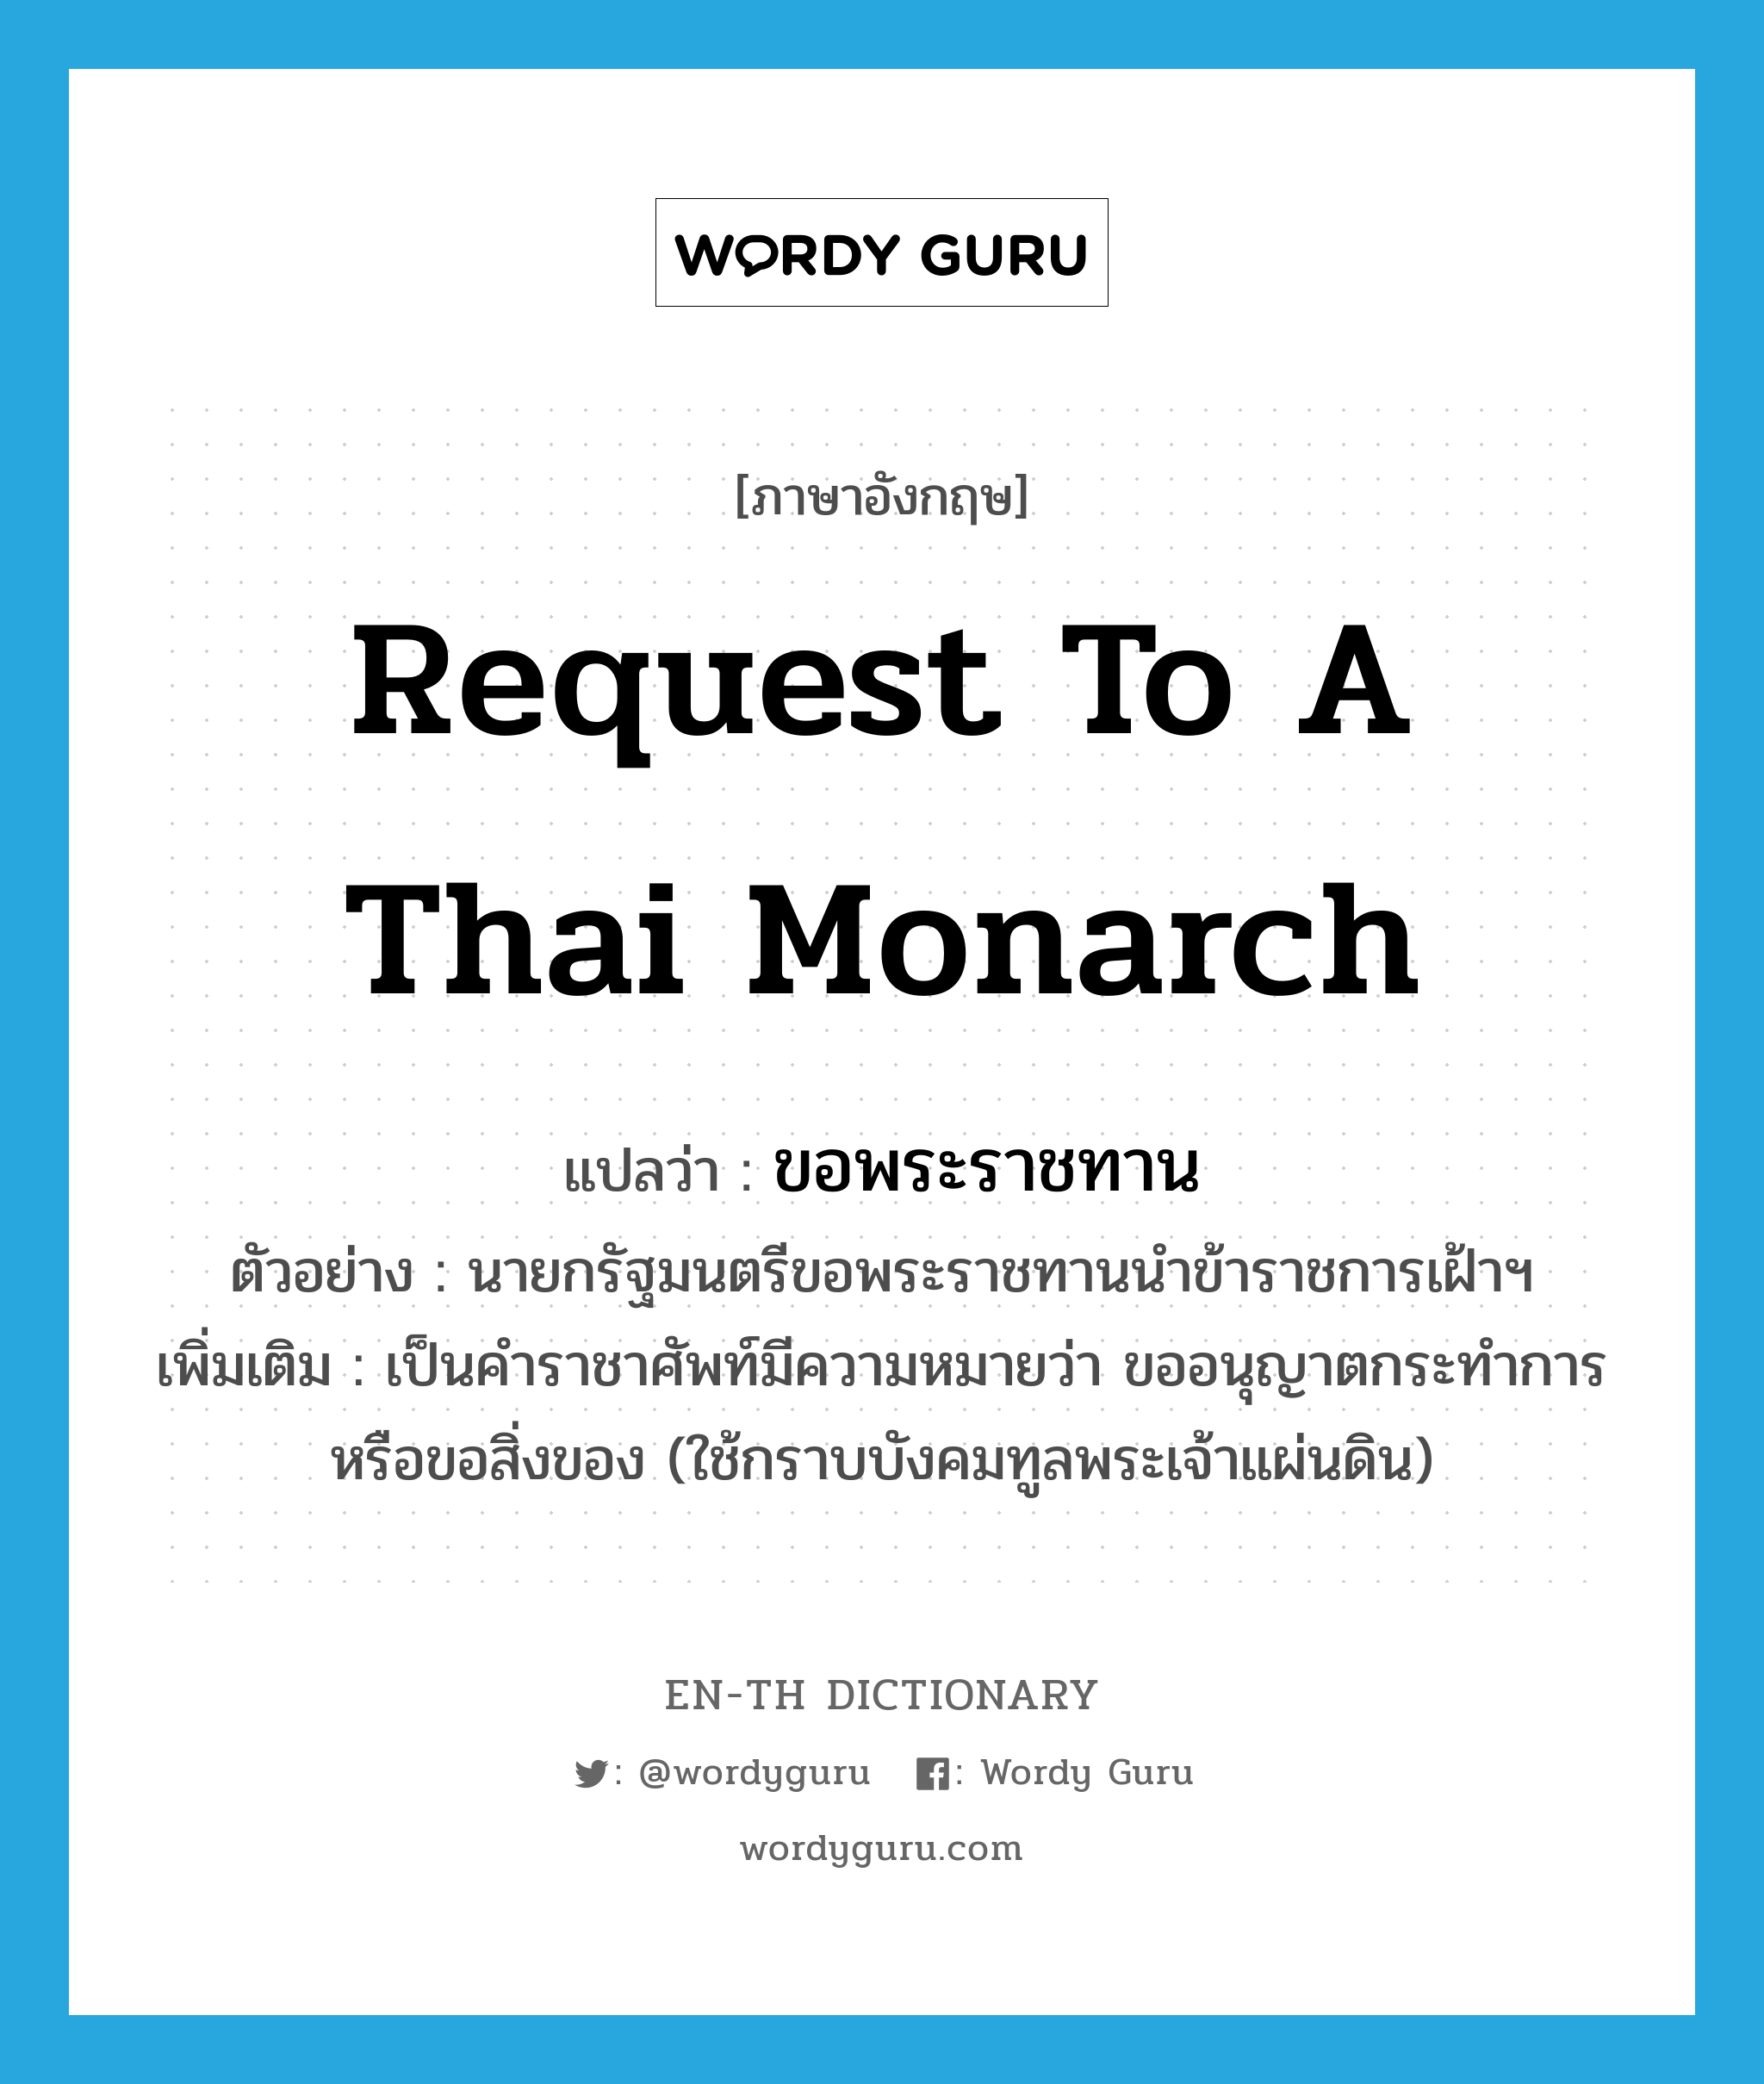 ขอพระราชทาน ภาษาอังกฤษ?, คำศัพท์ภาษาอังกฤษ ขอพระราชทาน แปลว่า request to a Thai monarch ประเภท V ตัวอย่าง นายกรัฐมนตรีขอพระราชทานนำข้าราชการเฝ้าฯ เพิ่มเติม เป็นคำราชาศัพท์มีความหมายว่า ขออนุญาตกระทำการหรือขอสิ่งของ (ใช้กราบบังคมทูลพระเจ้าแผ่นดิน) หมวด V